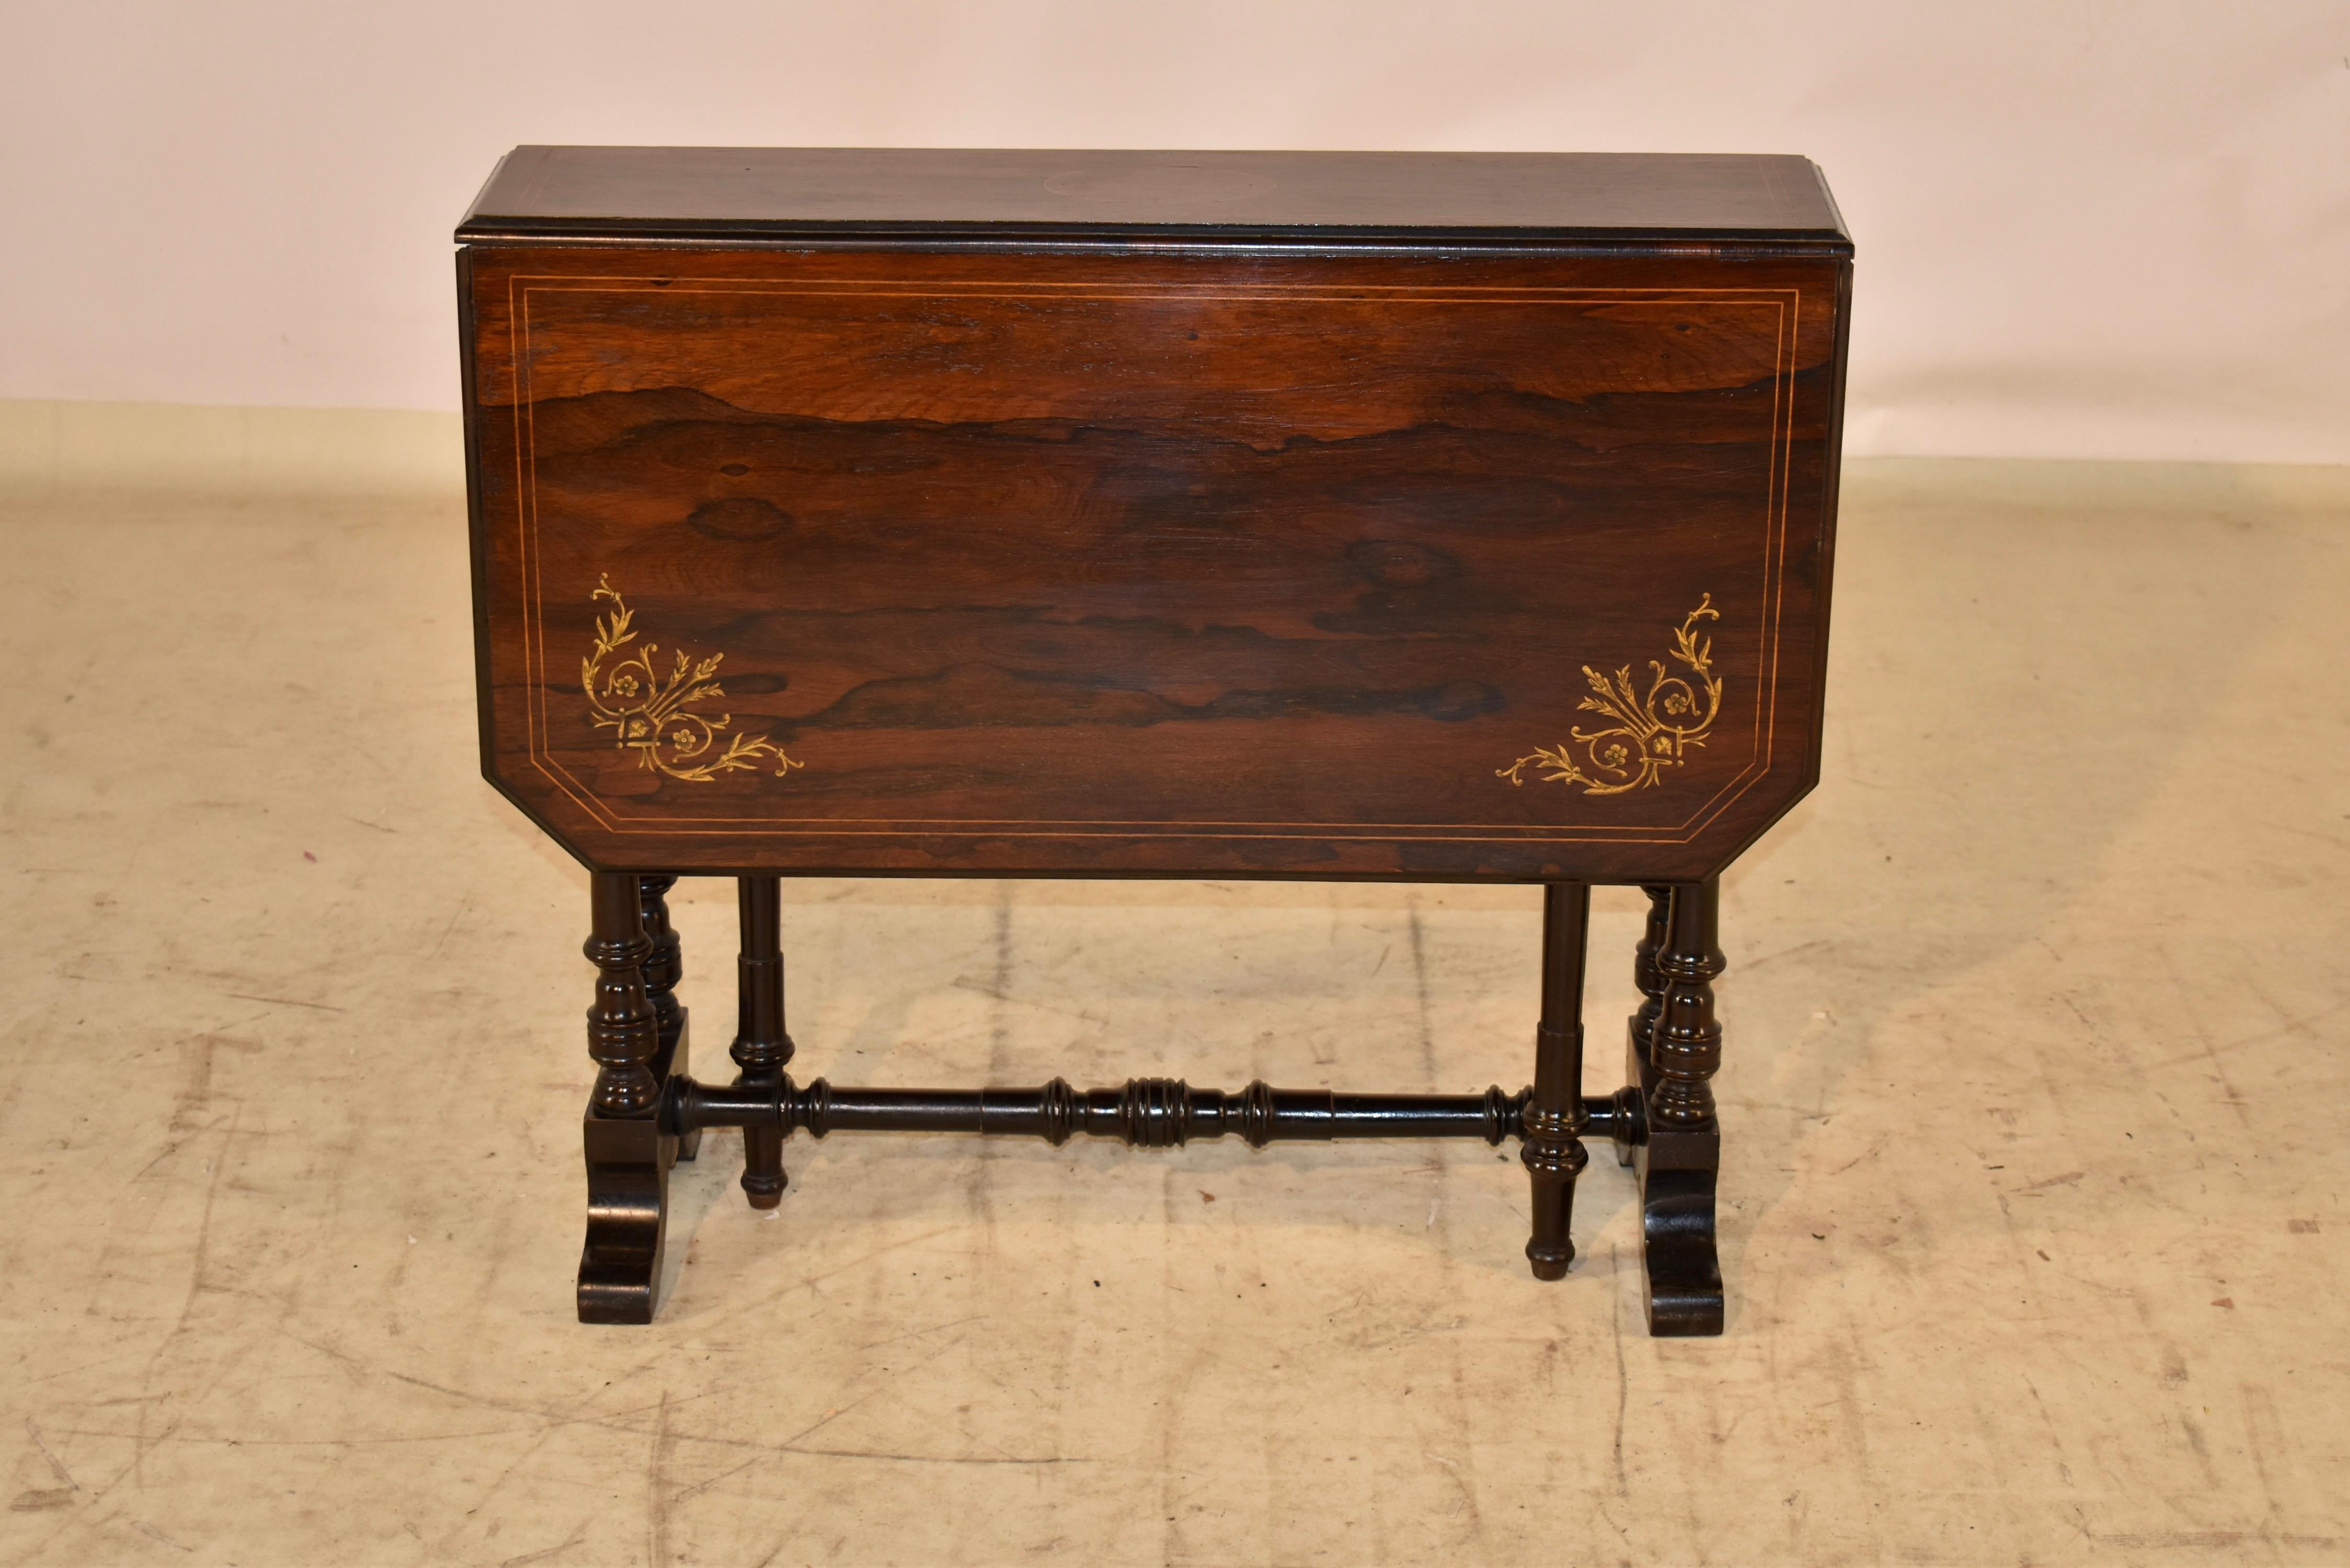 Sutherland Tisch aus England, 19. Jahrhundert, aus Palisanderholz.  Die Platte ist fantastisch und hat eine schöne Maserung, die mit Satinholz und Buchsbaumbändern und dekorativen Akzenten in den Ecken eingelegt ist.  Die Platte mit den ausgezogenen